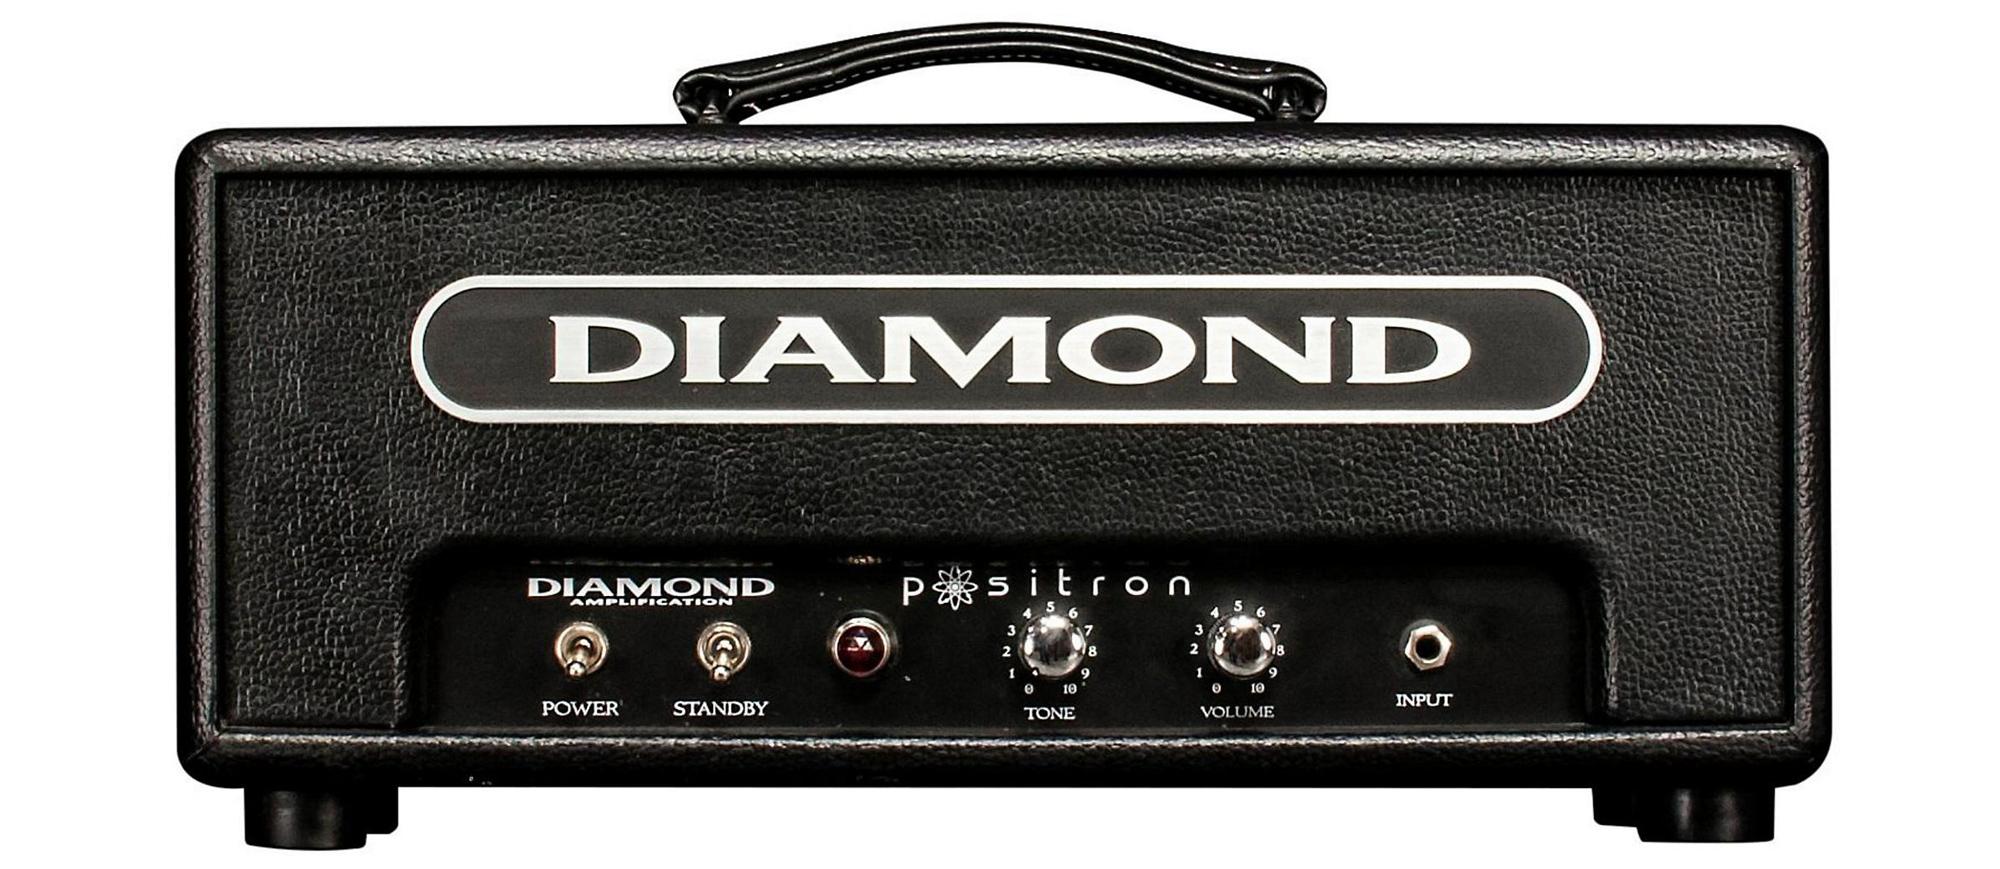 Гитарный усилитель DIAMOND Positron Z186 Amplifier